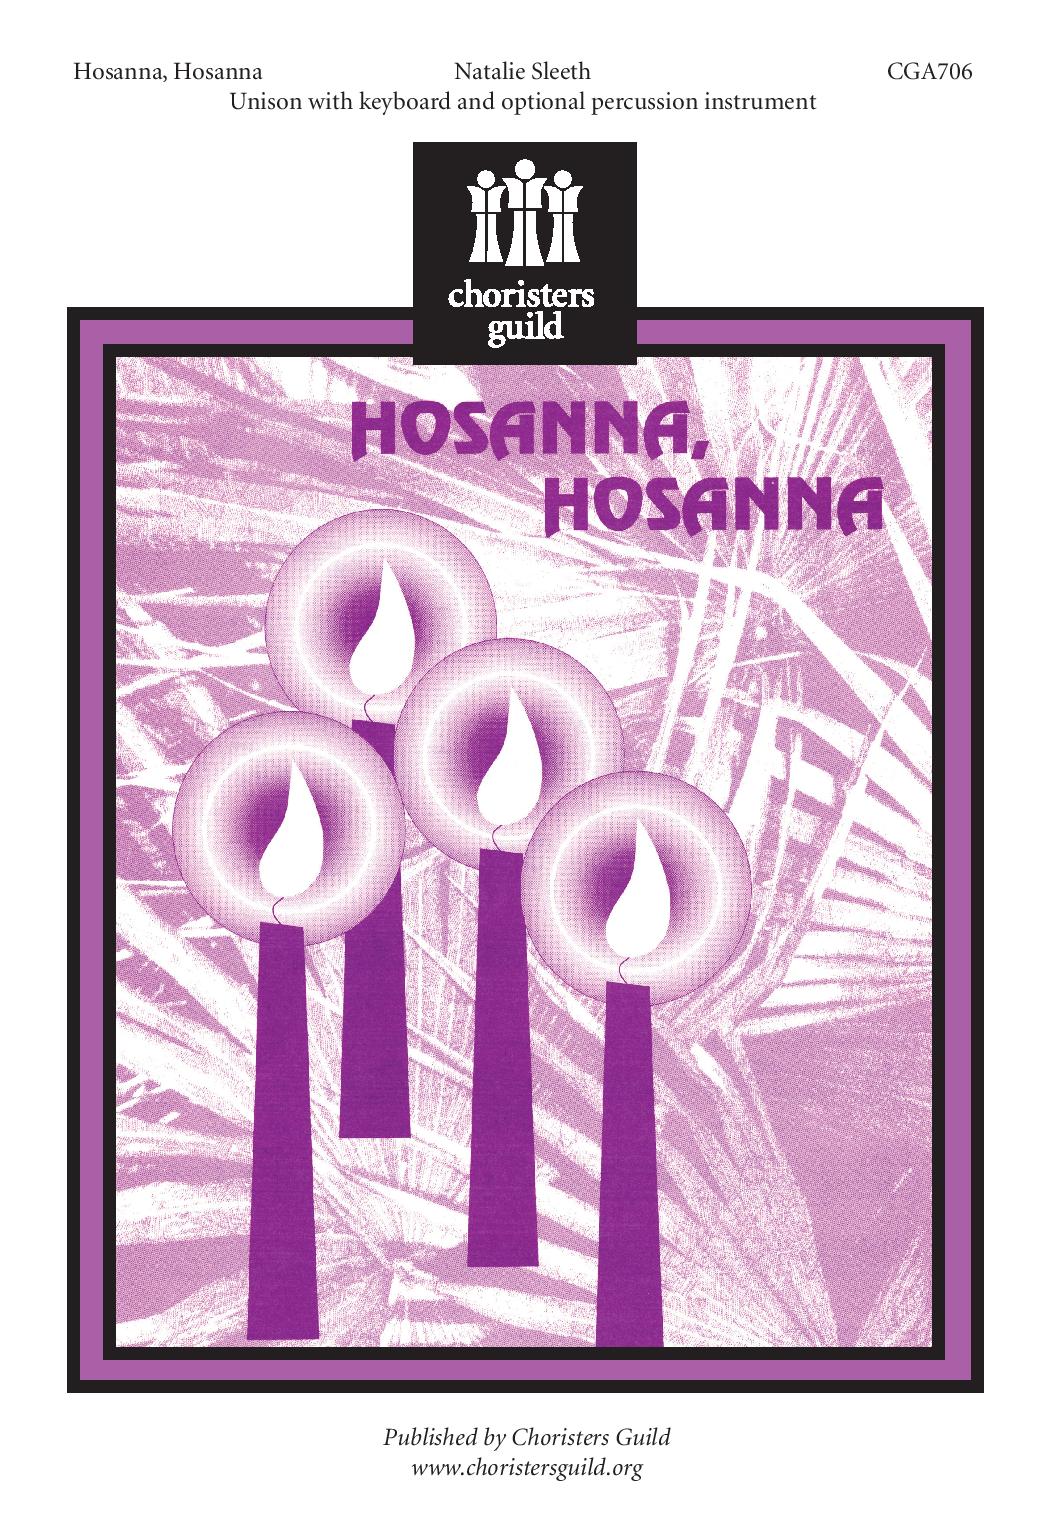 Hosanna, Hosanna